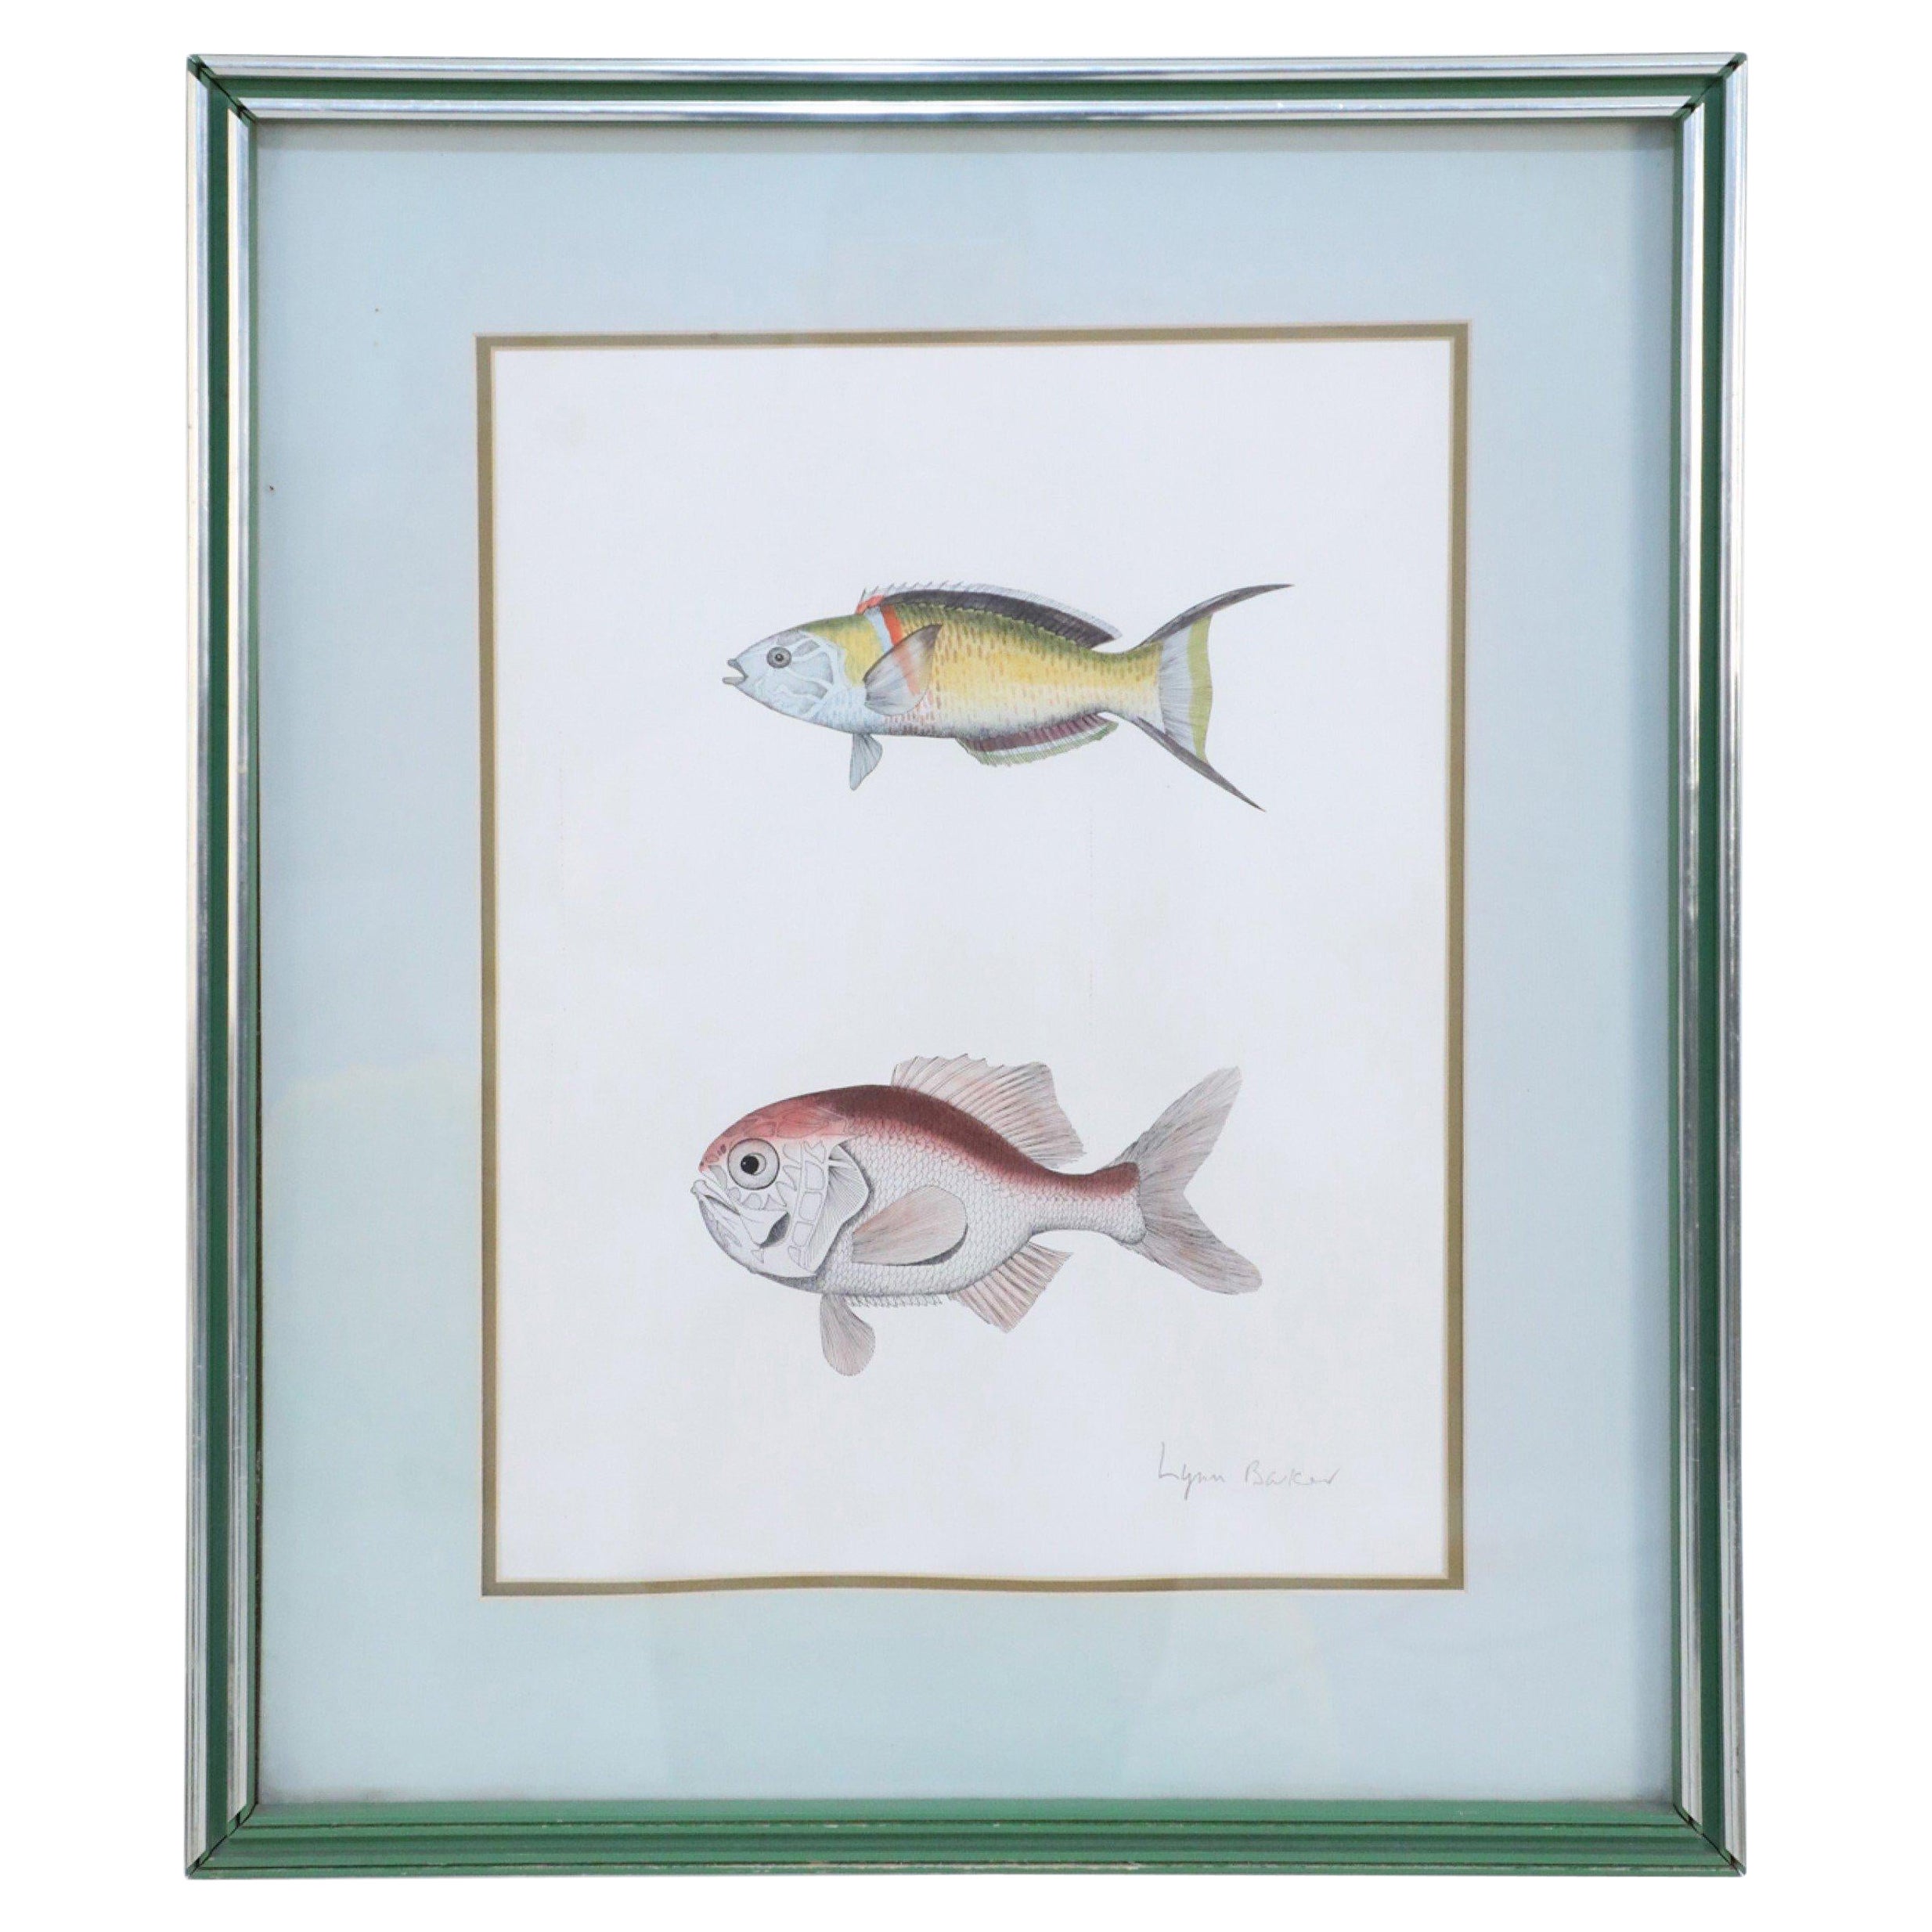 Lithographie encadrée de deux poissons tropicaux multicolores